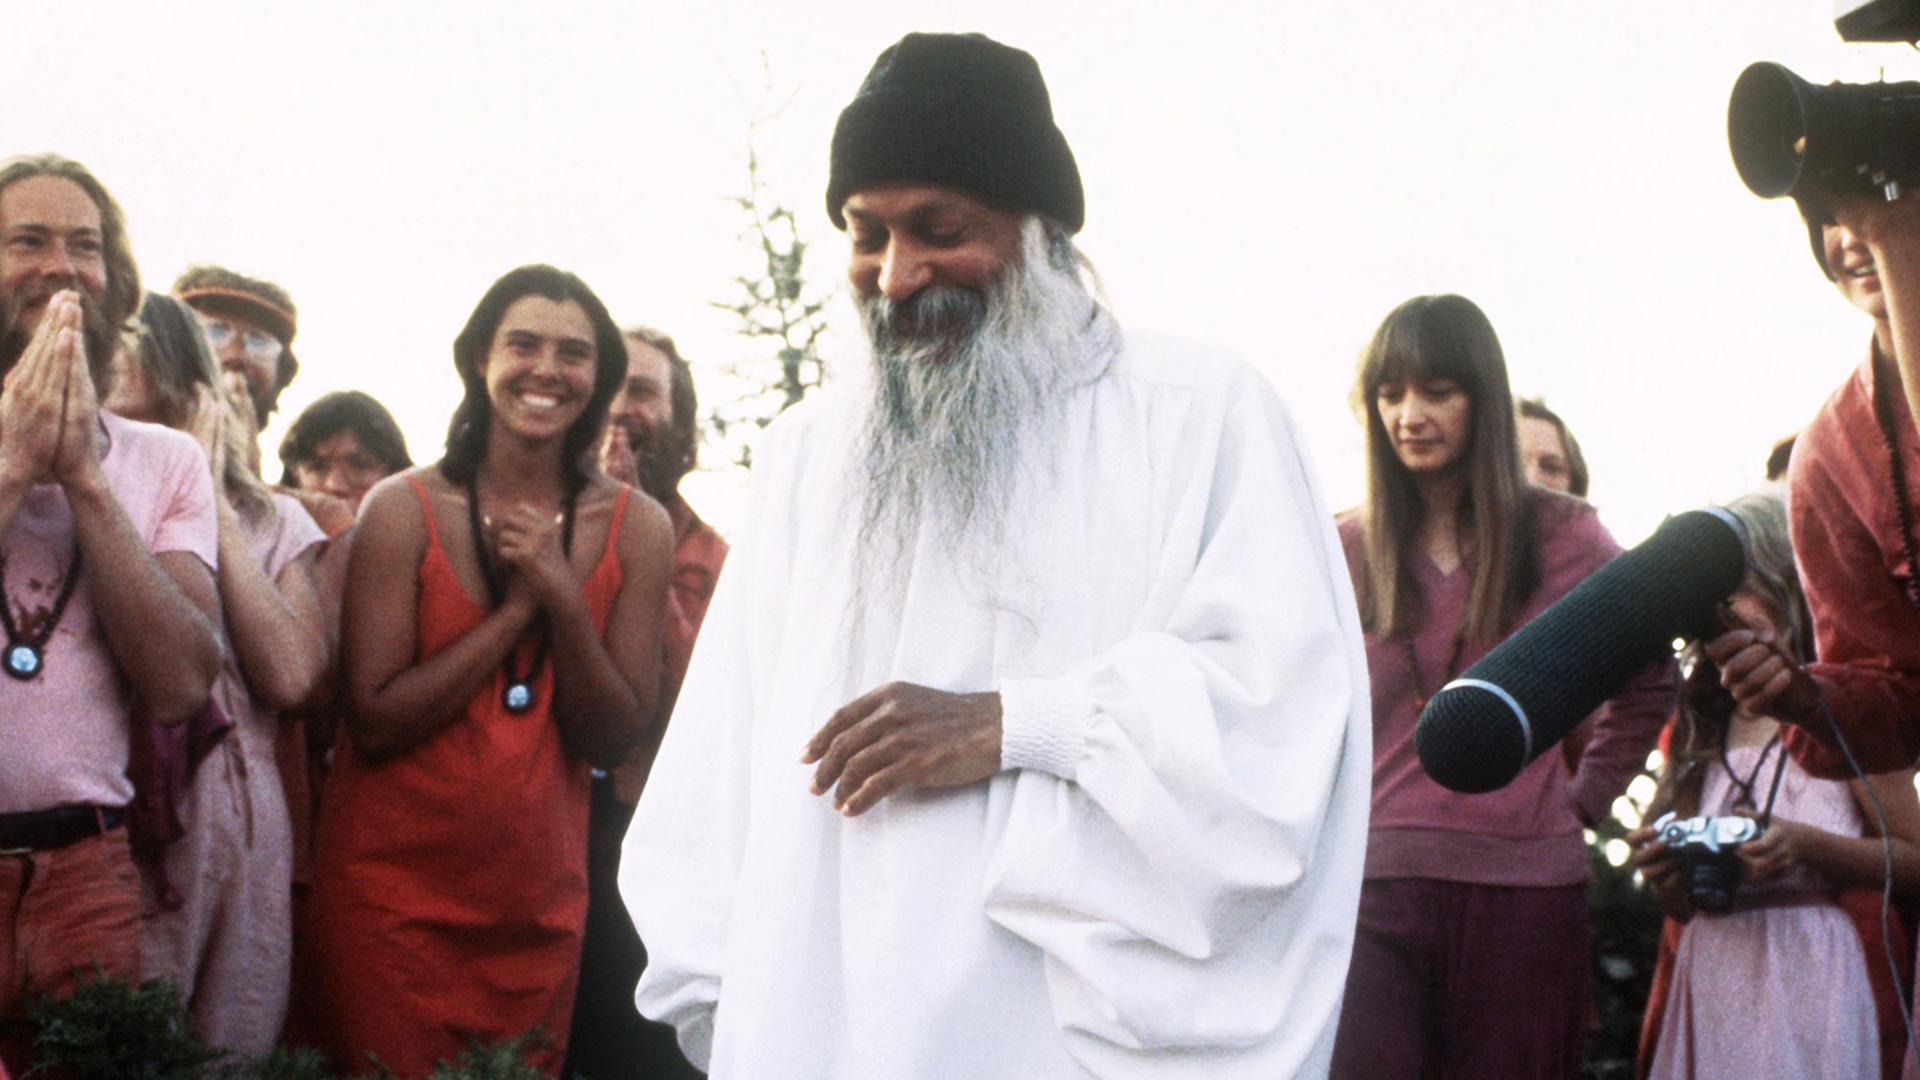 Der umstrittene indische Guru und Sektenführer Bhagwan Shree Rajneesh 1984 mit Anhängern in seiner Kommune "Rajneeshpuram" in Antelope im US-Bundesstaat Oregon.